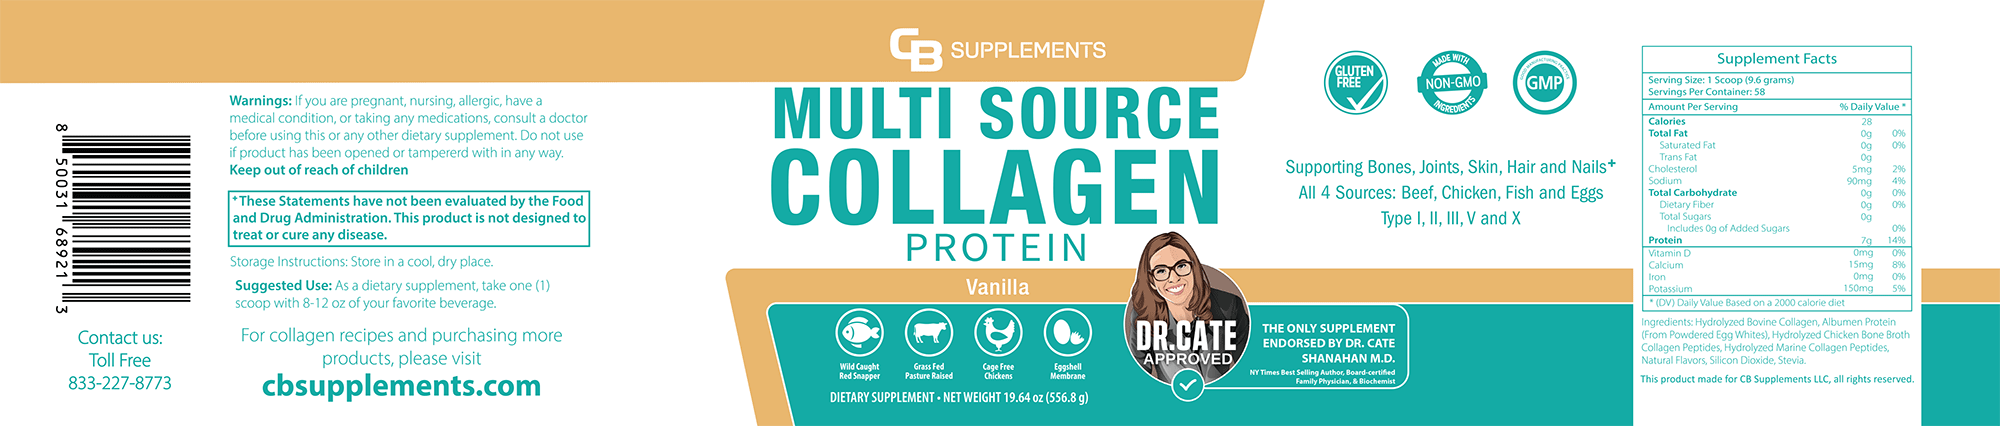 Vanilla Multi Collagen Protein Powder Label and Ingredients